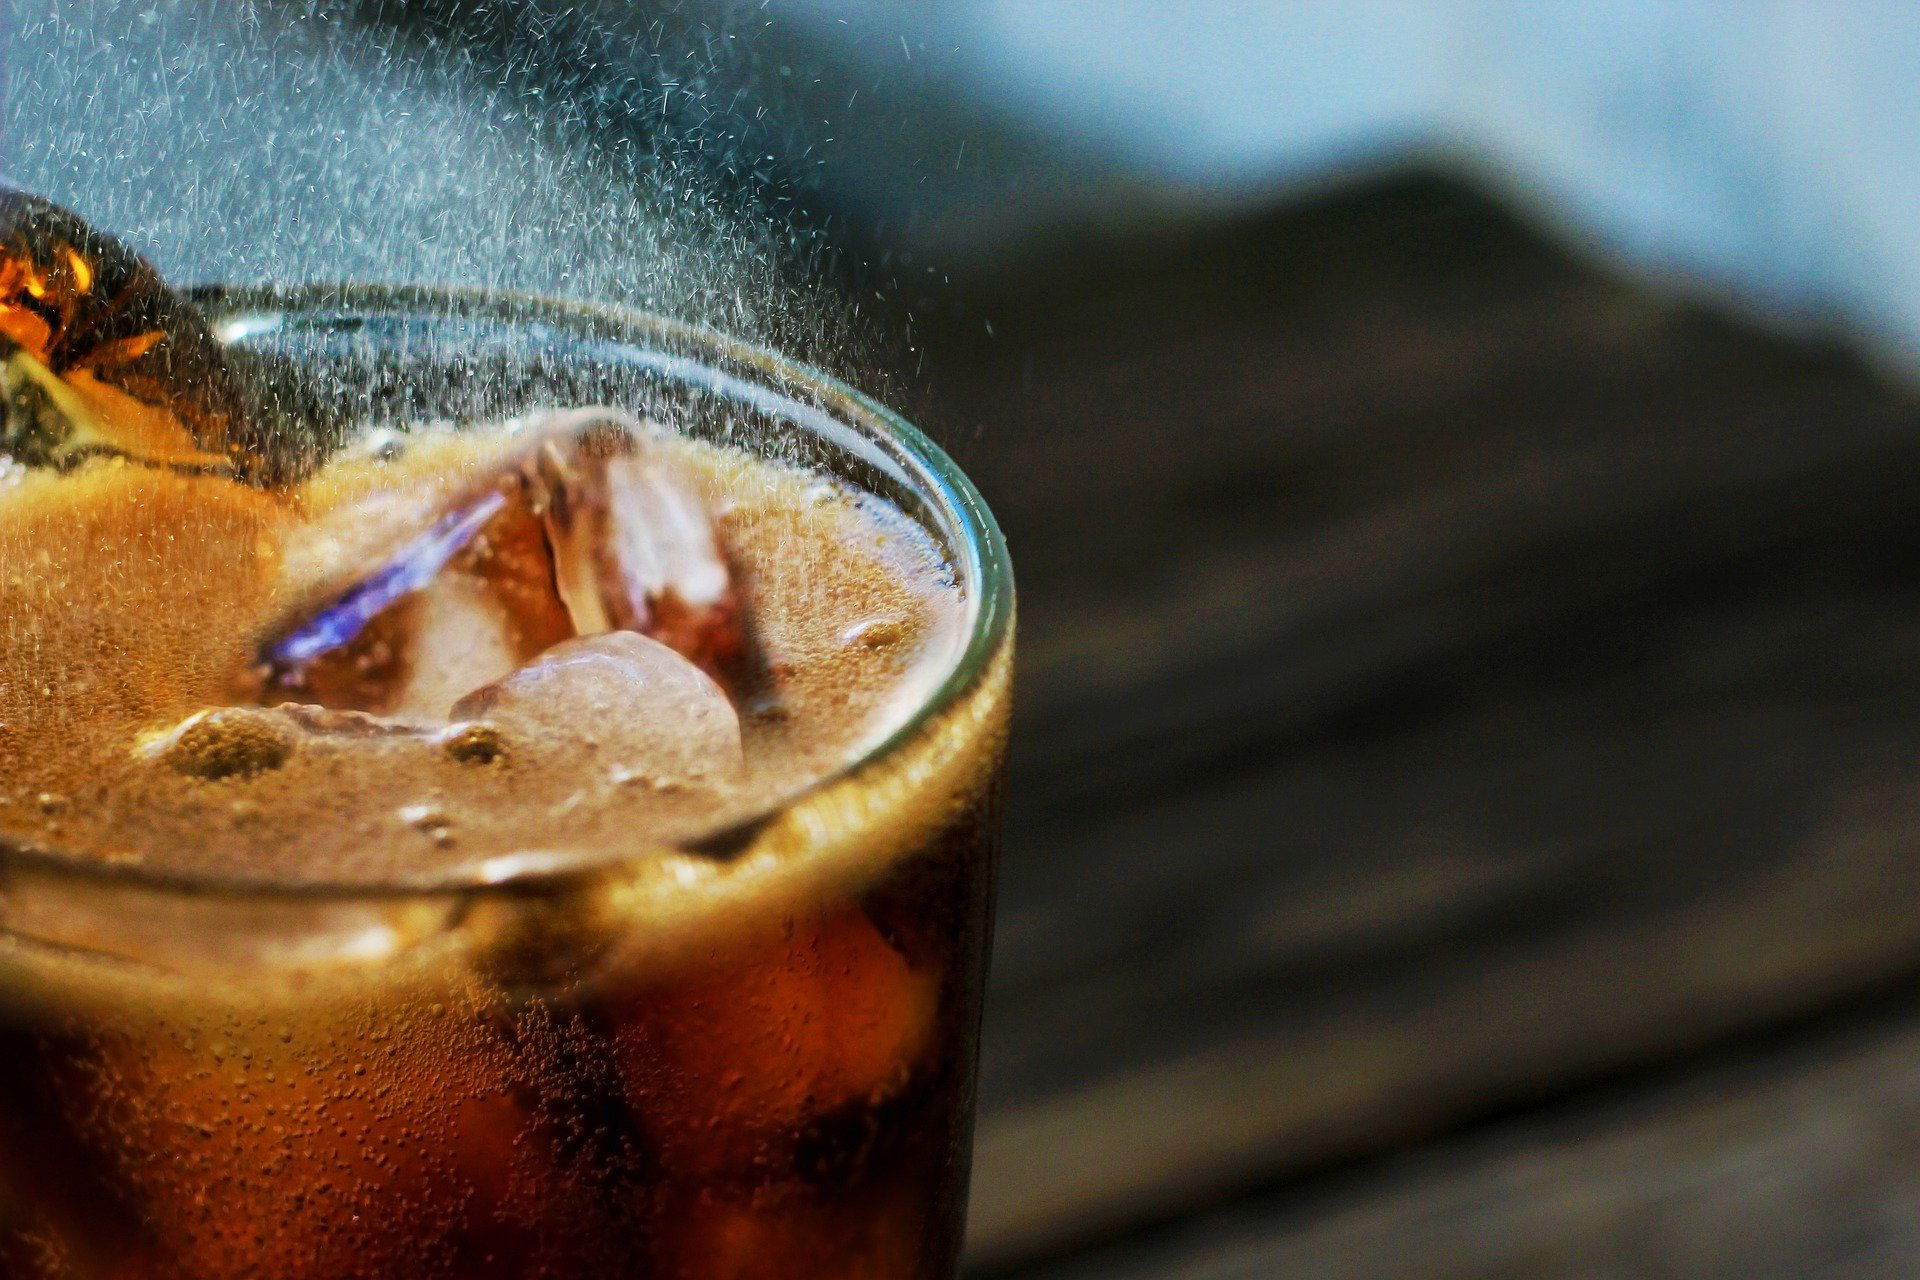 دراسة صادمة تكشف خطر مشروبات الدايت على صحتنا!